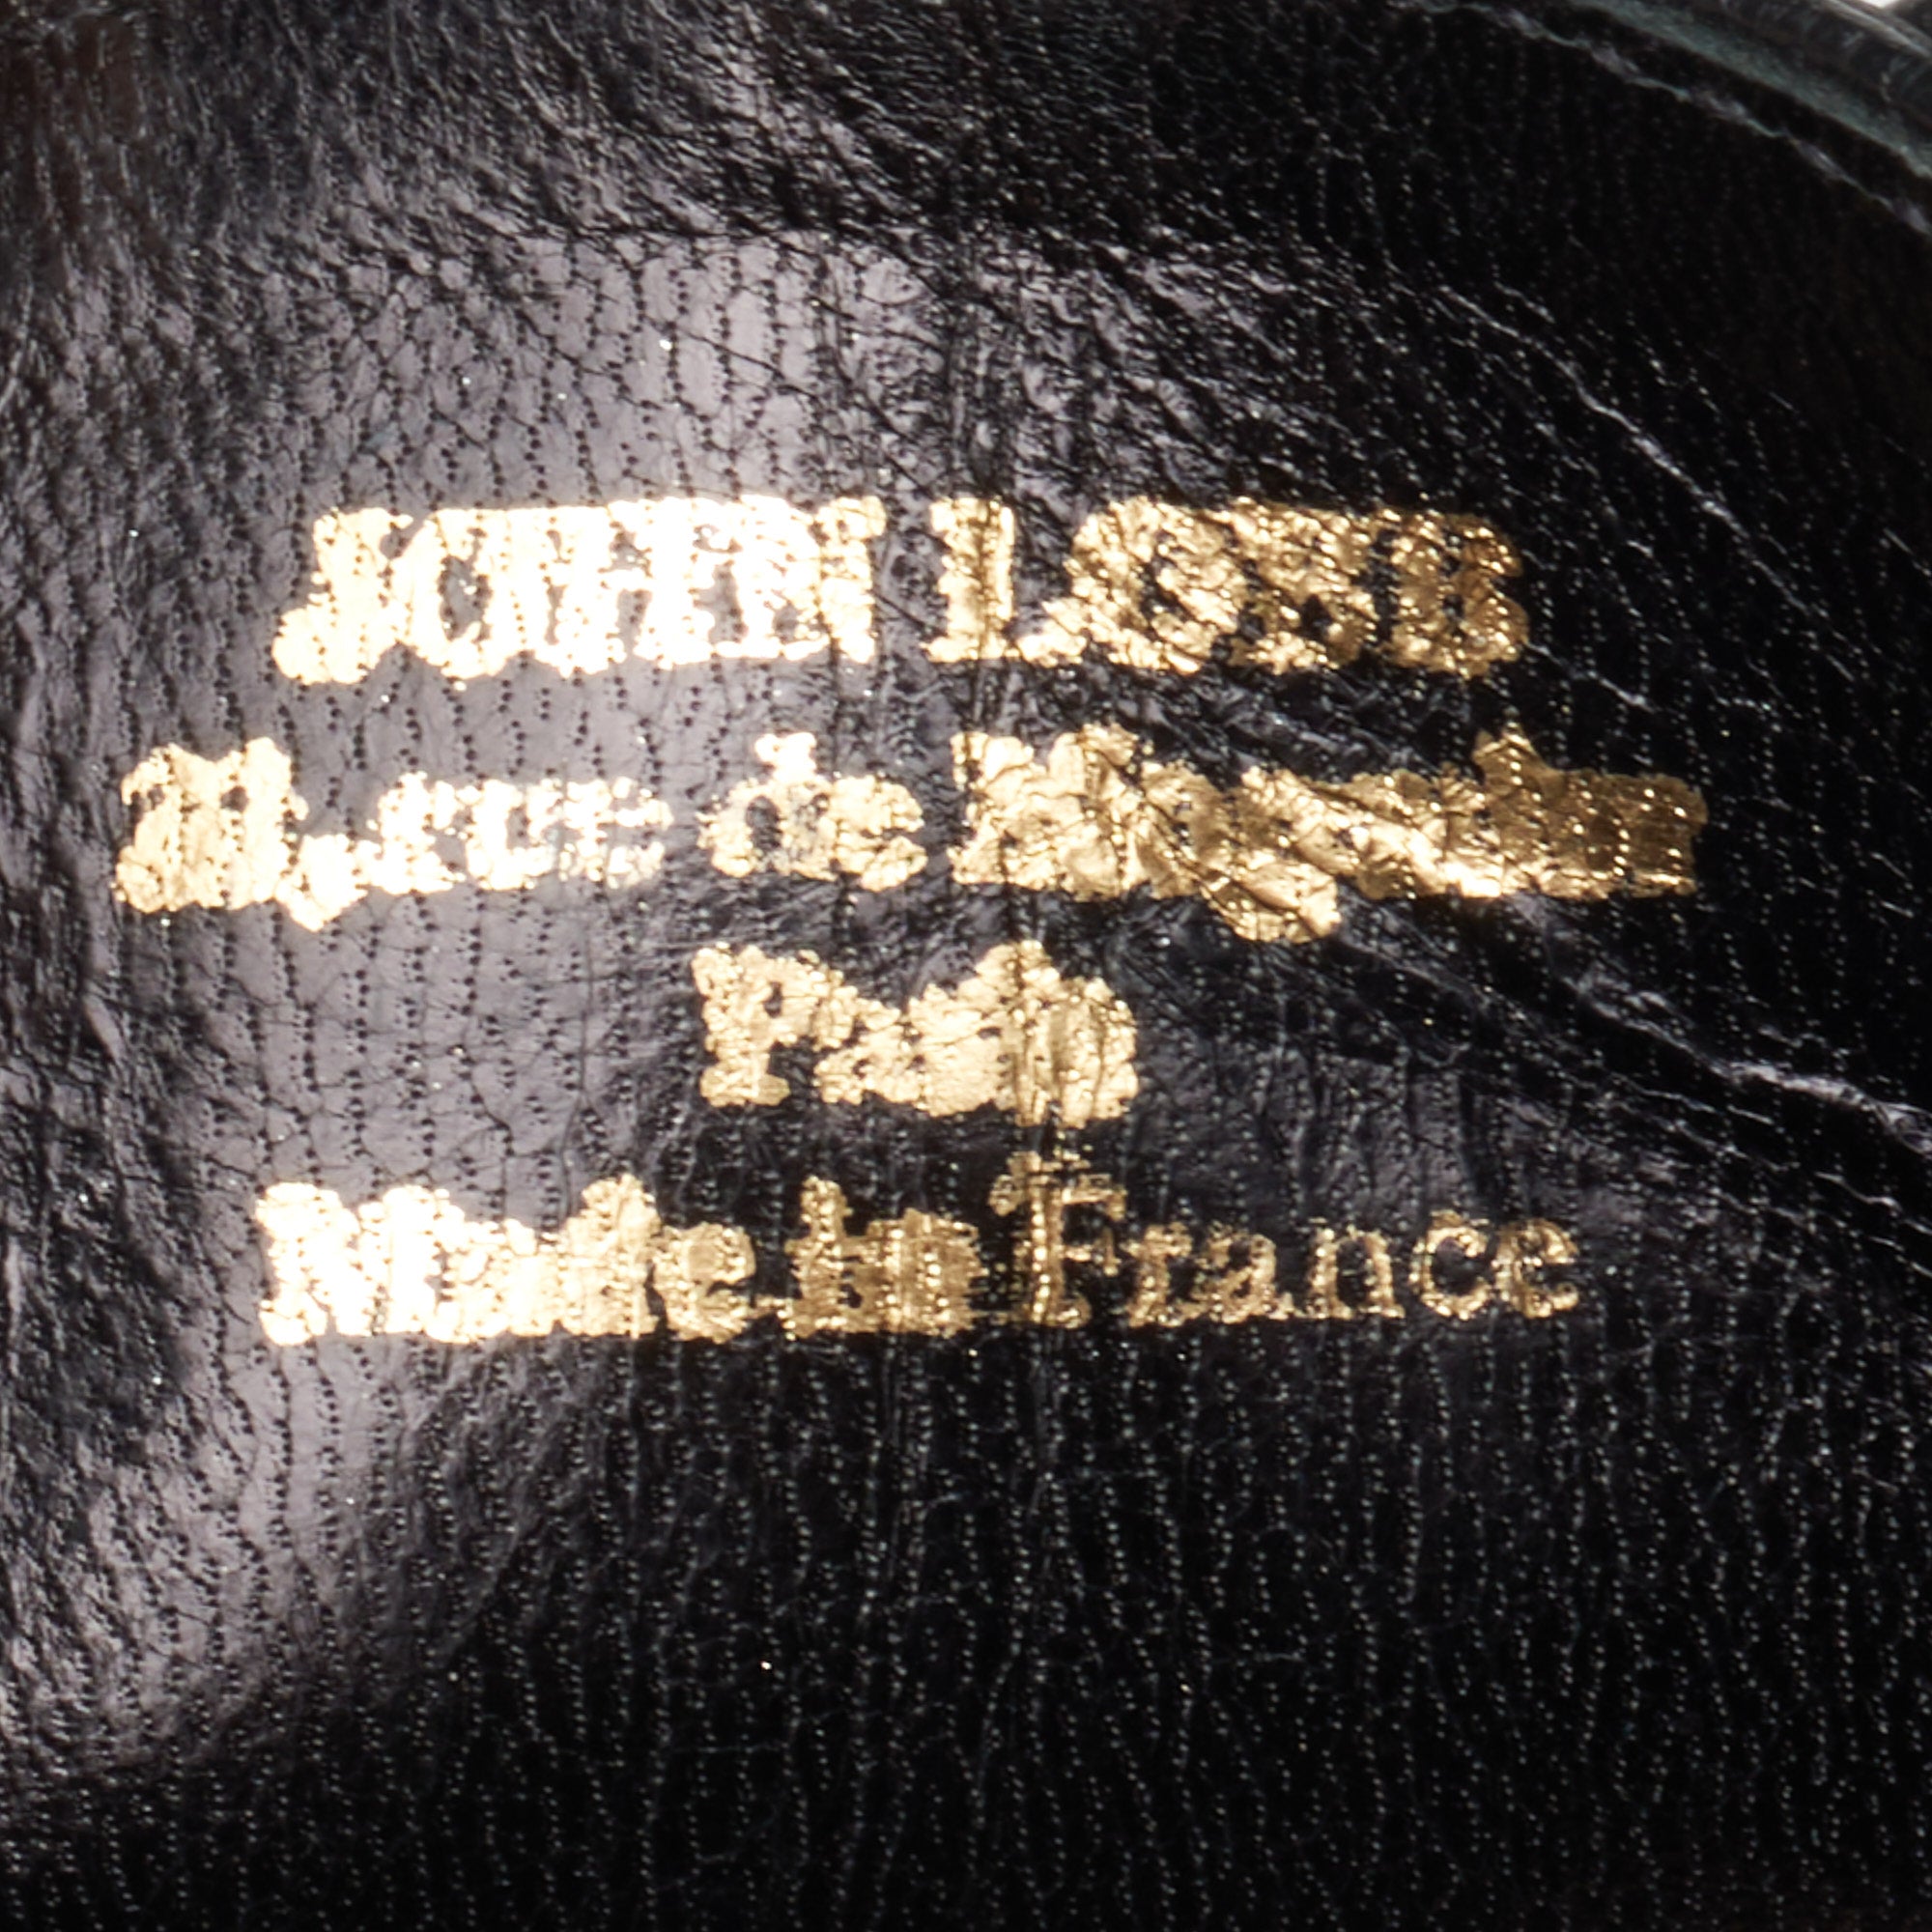 JOHN LOBB Paris Bespoke Black Calf Leather Balmoral Oxford Shoes UK 7.5 US 8.5 JOHN LOBB